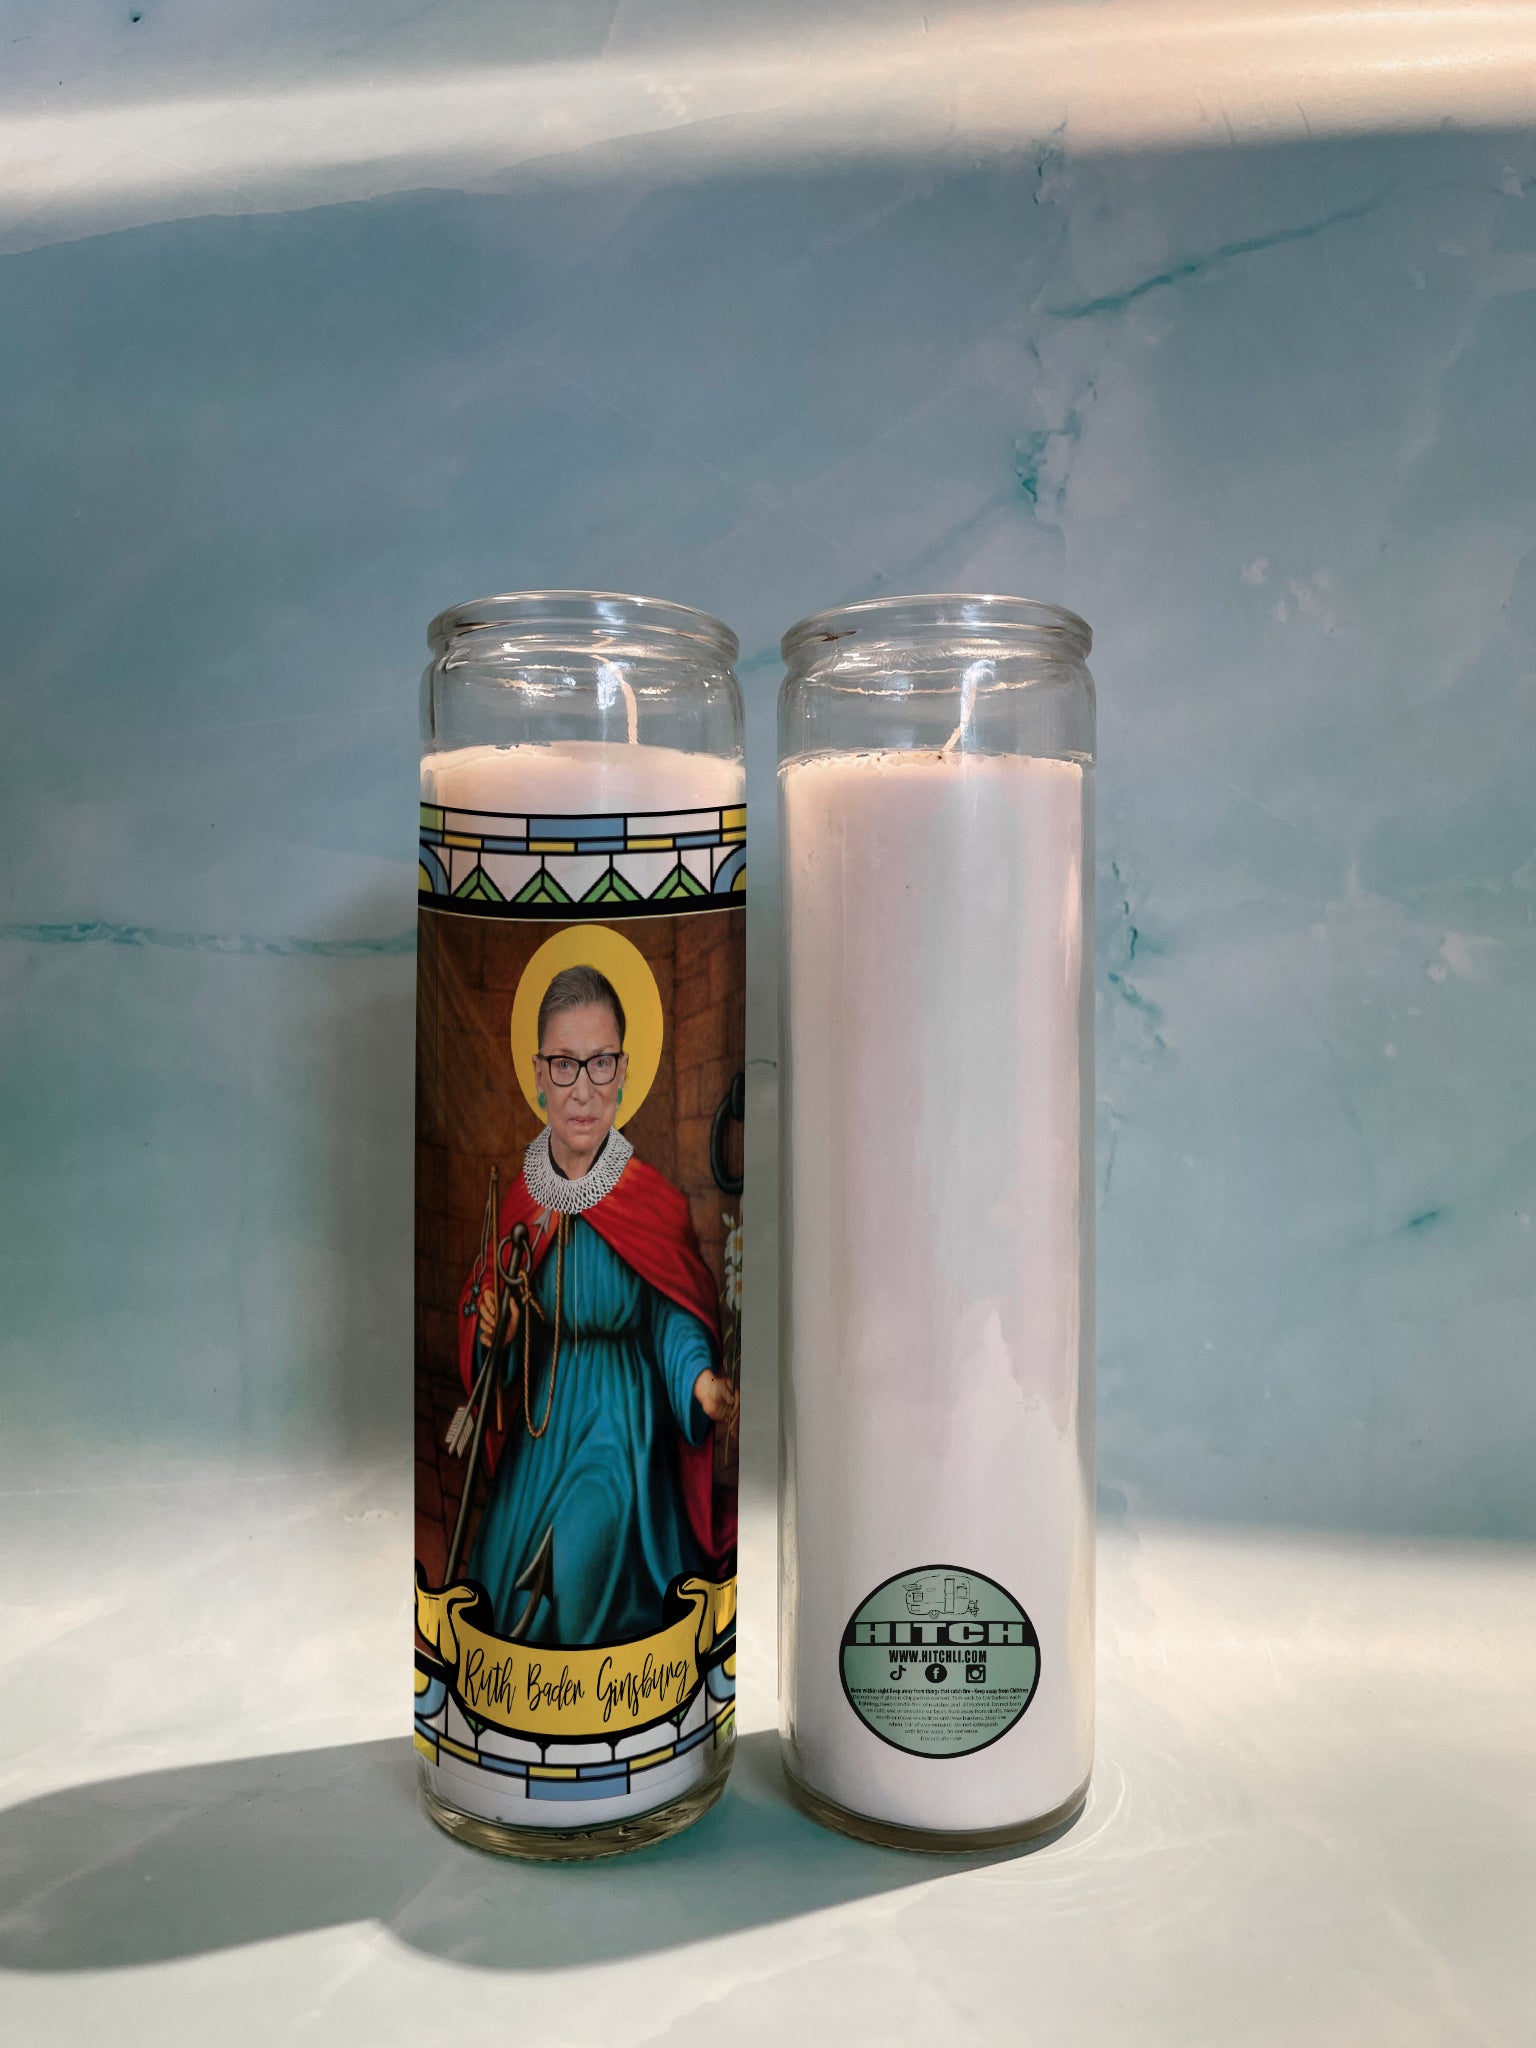 Ruth Bader Ginsburg (RBG) Original Prayer Candle